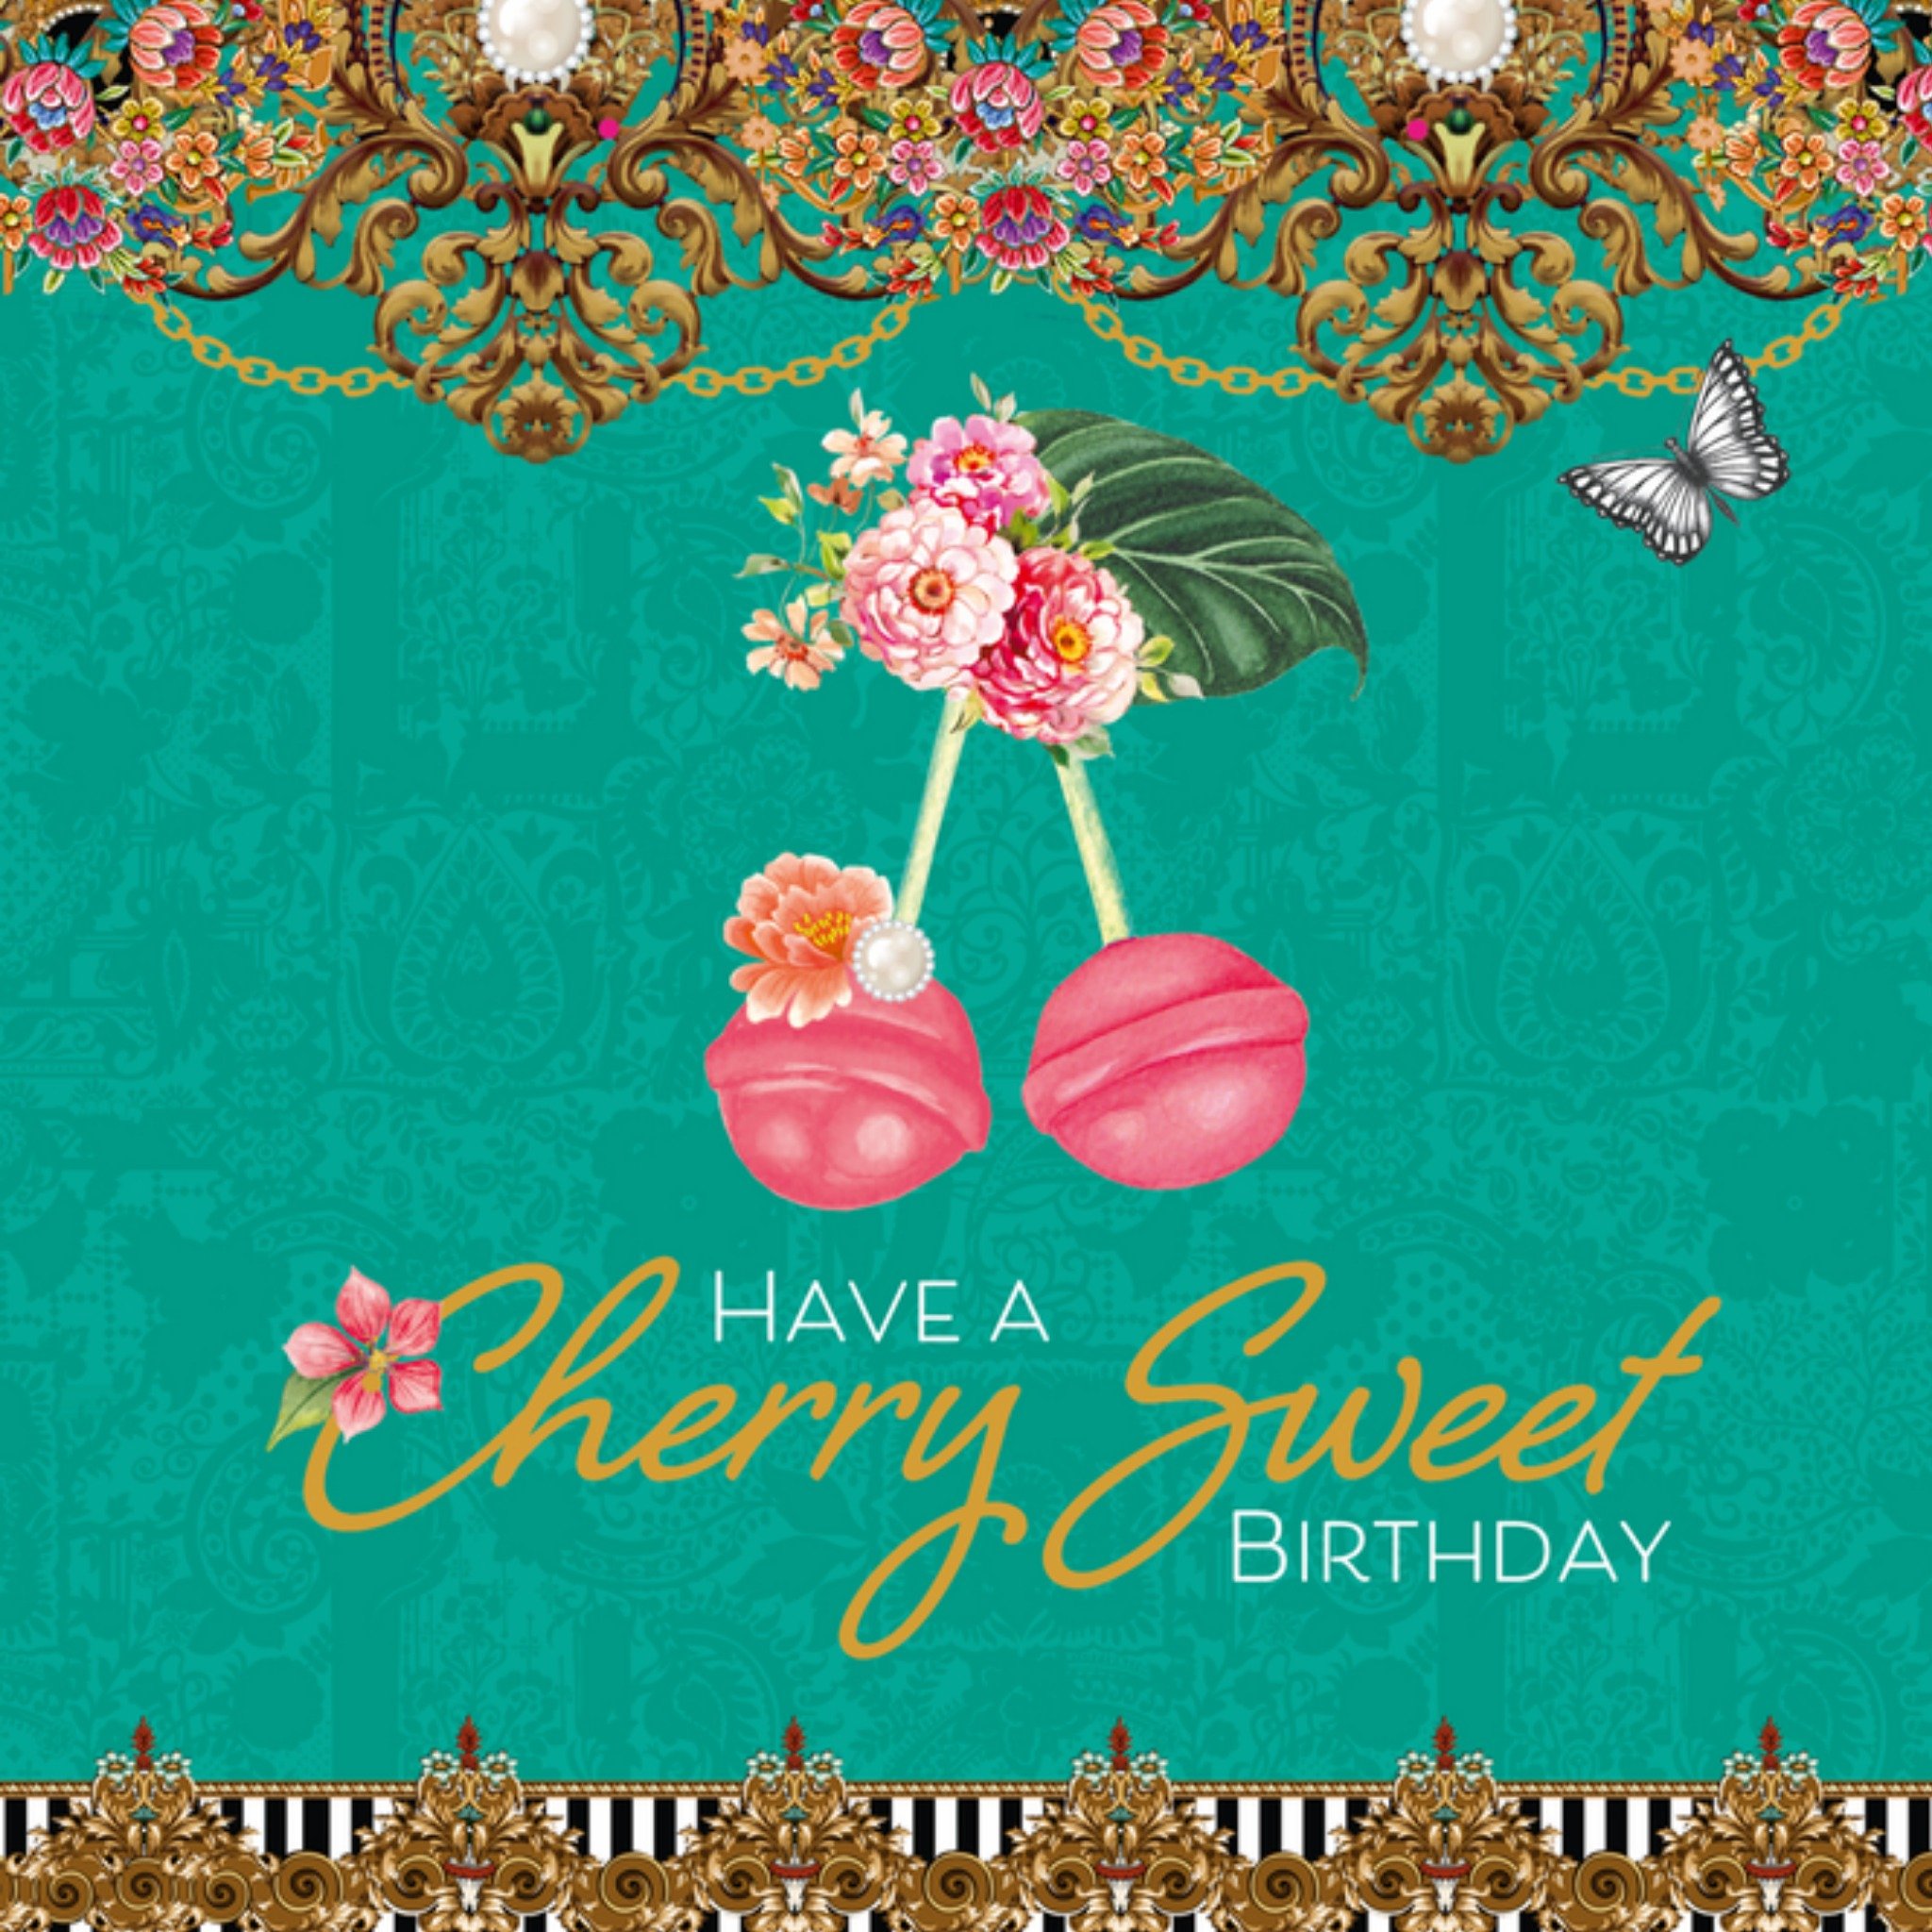 Melli Mello - Verjaardagskaart - Cherry Sweet Birthday